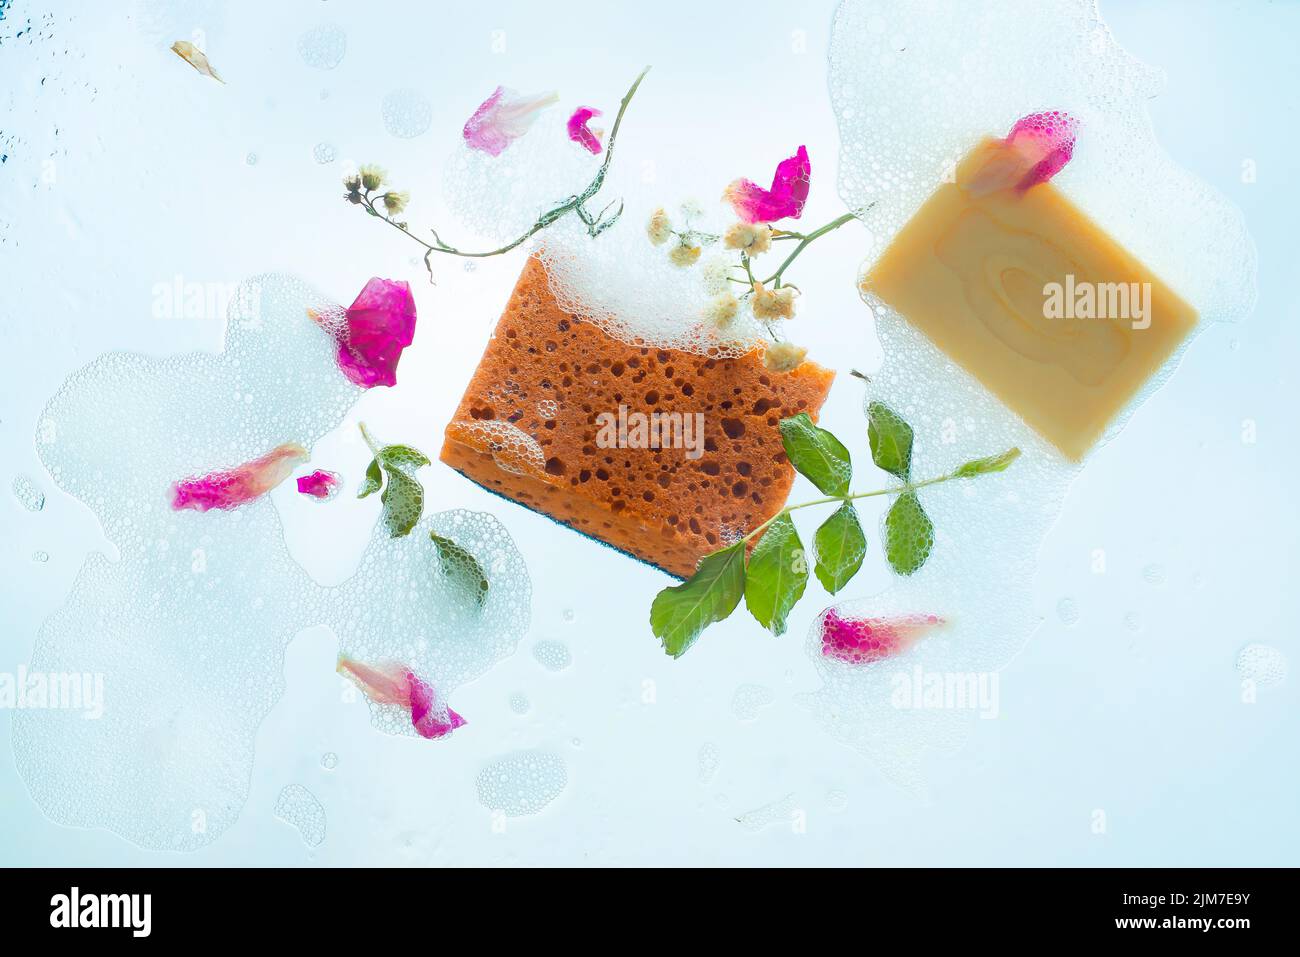 Jabón y esponjas en espuma, lavavajillas delicado, decoración floral, contraluz Foto de stock